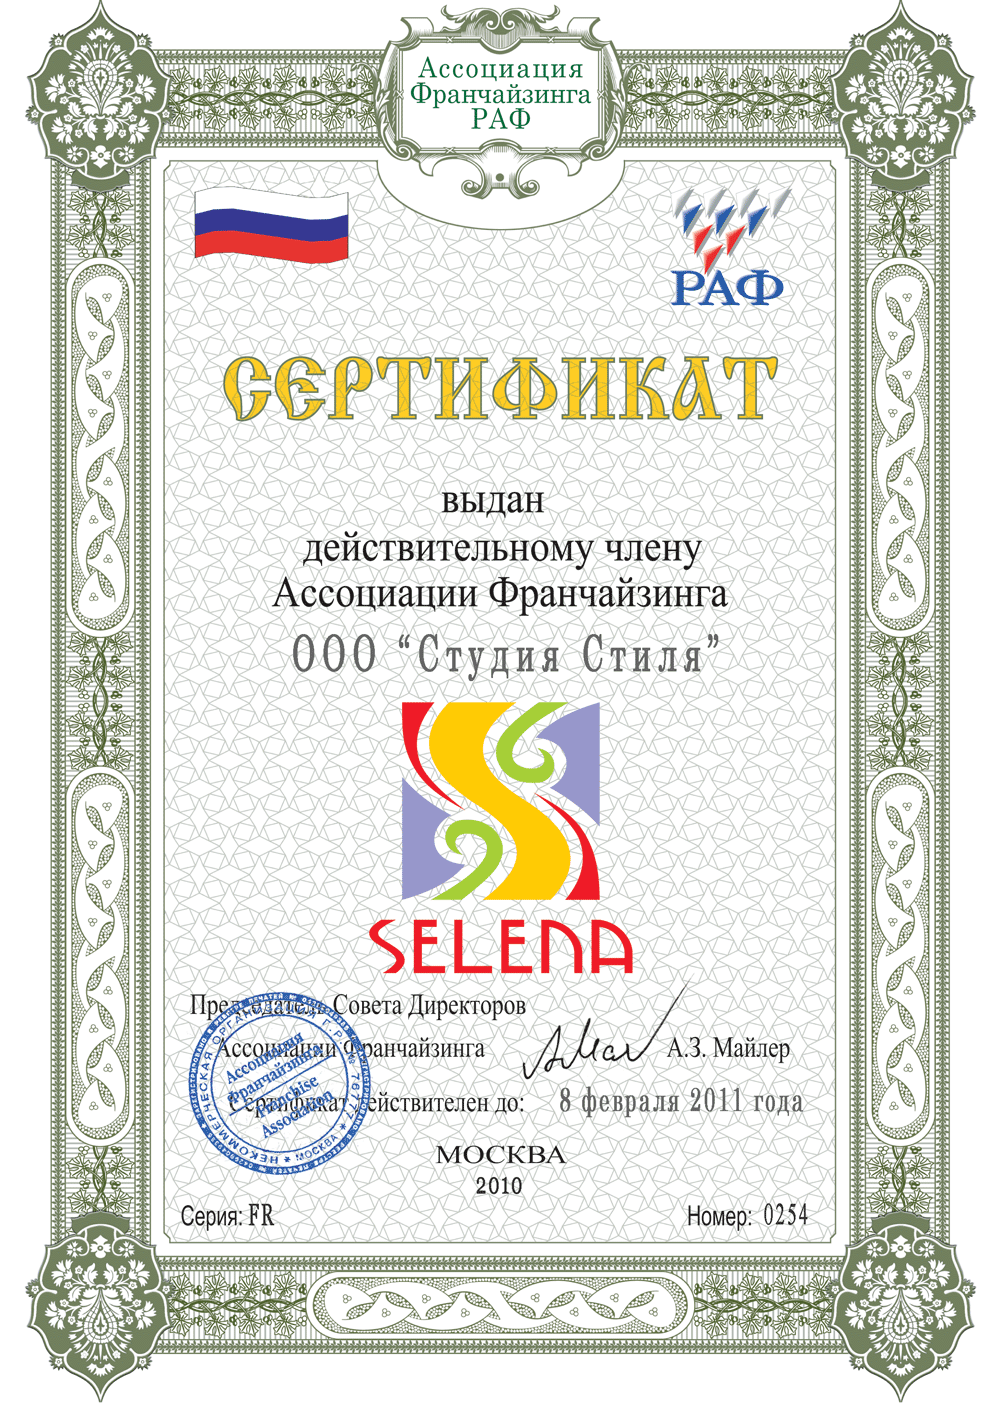 Российская ассоциация франчайзинга, 2011